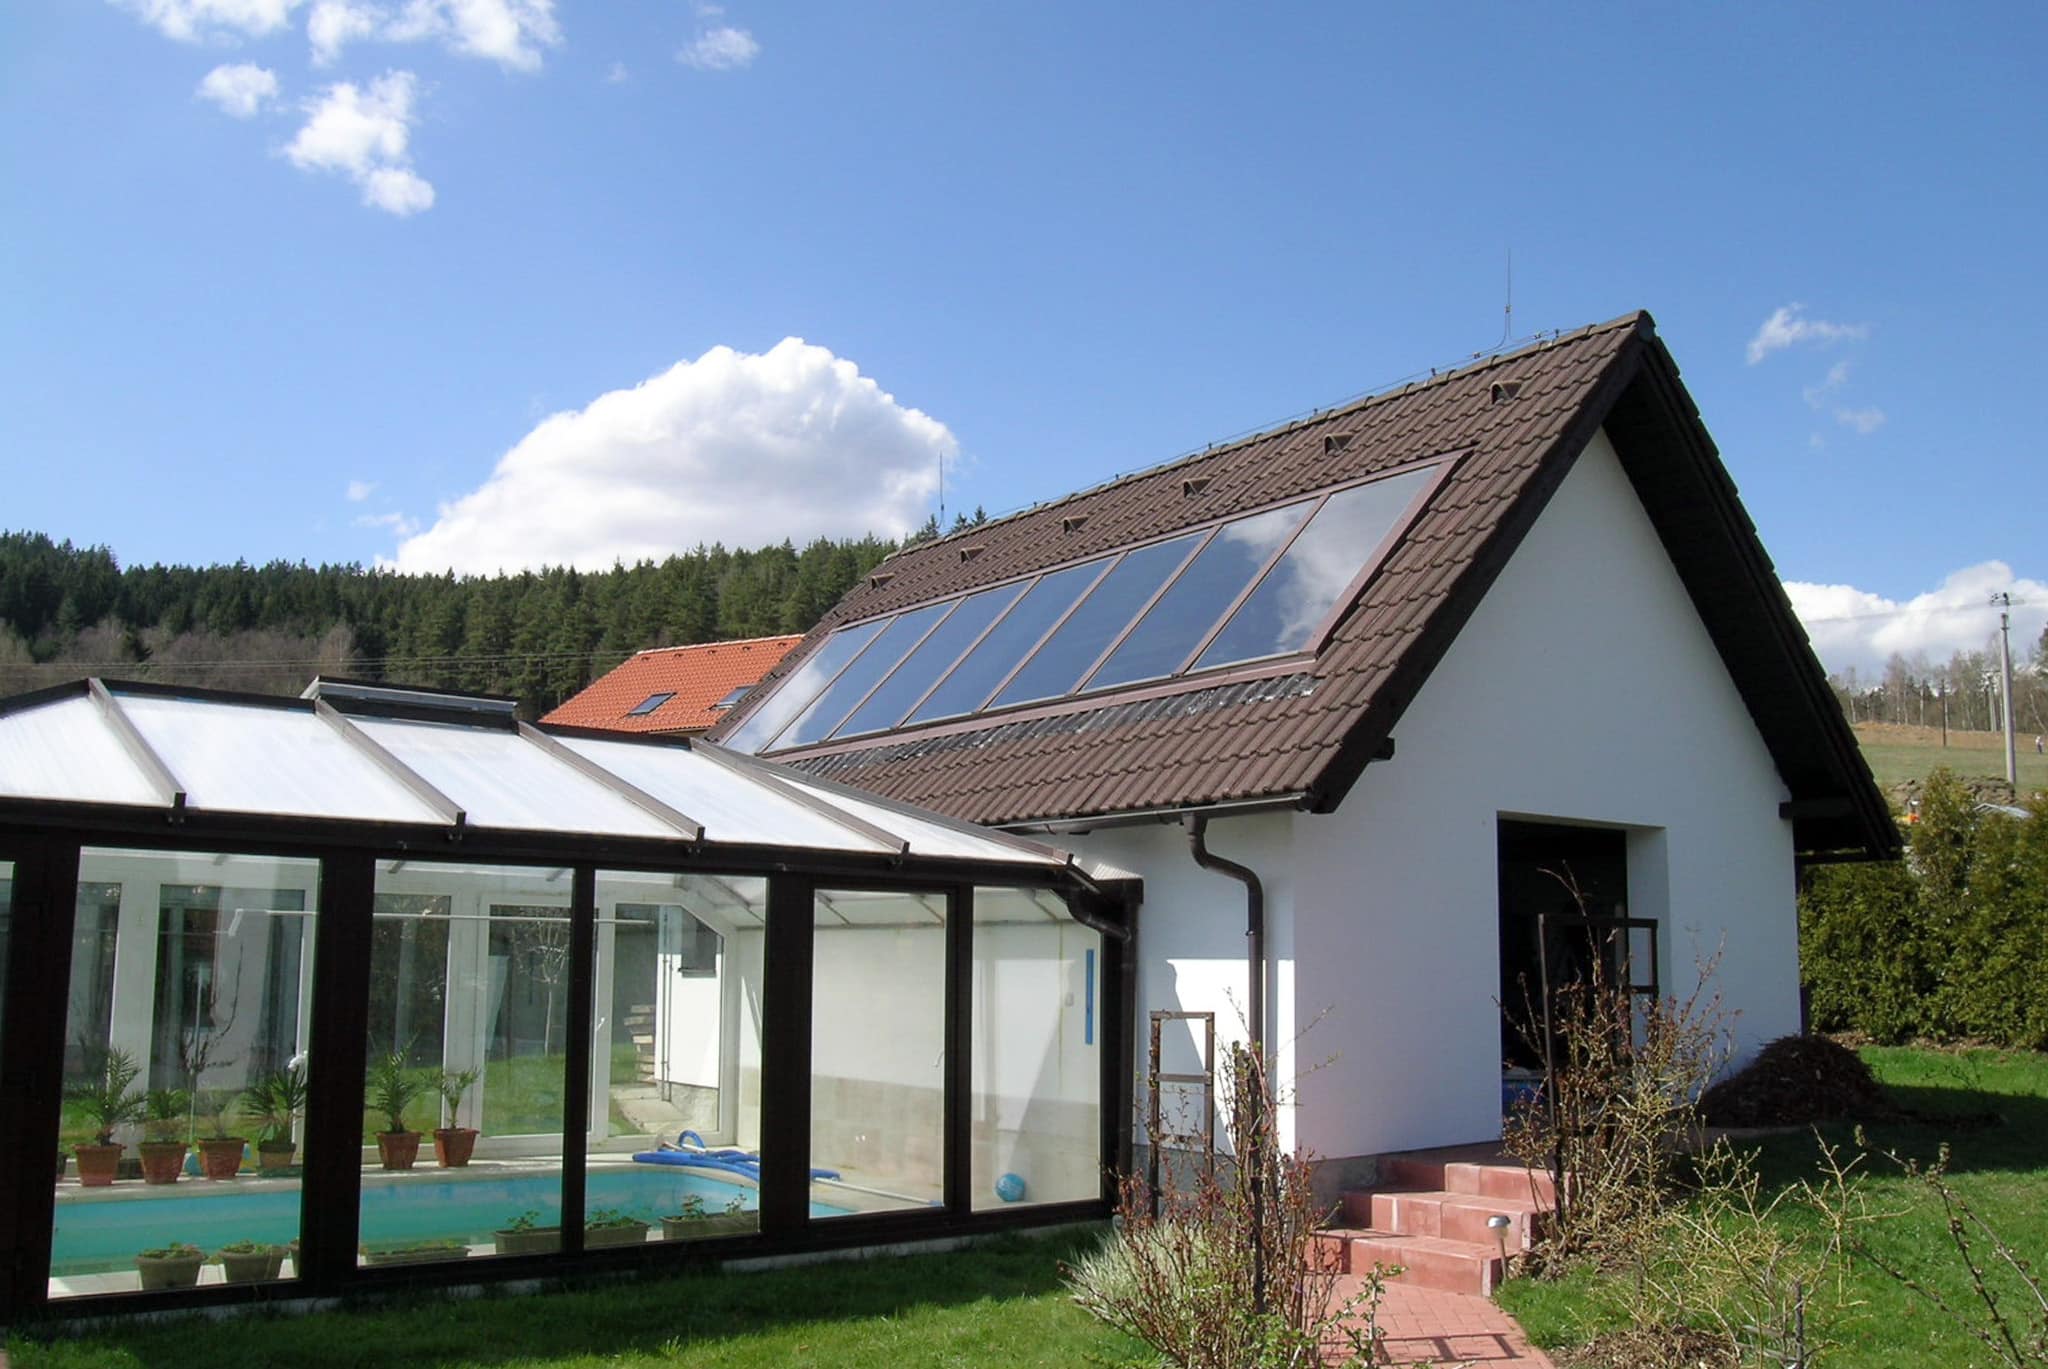 Einfamilienhaus mit Hochleistungs -Flachkollektoren | Thermische Solaranlage | TS 400 Solarkollektor | Hargassner